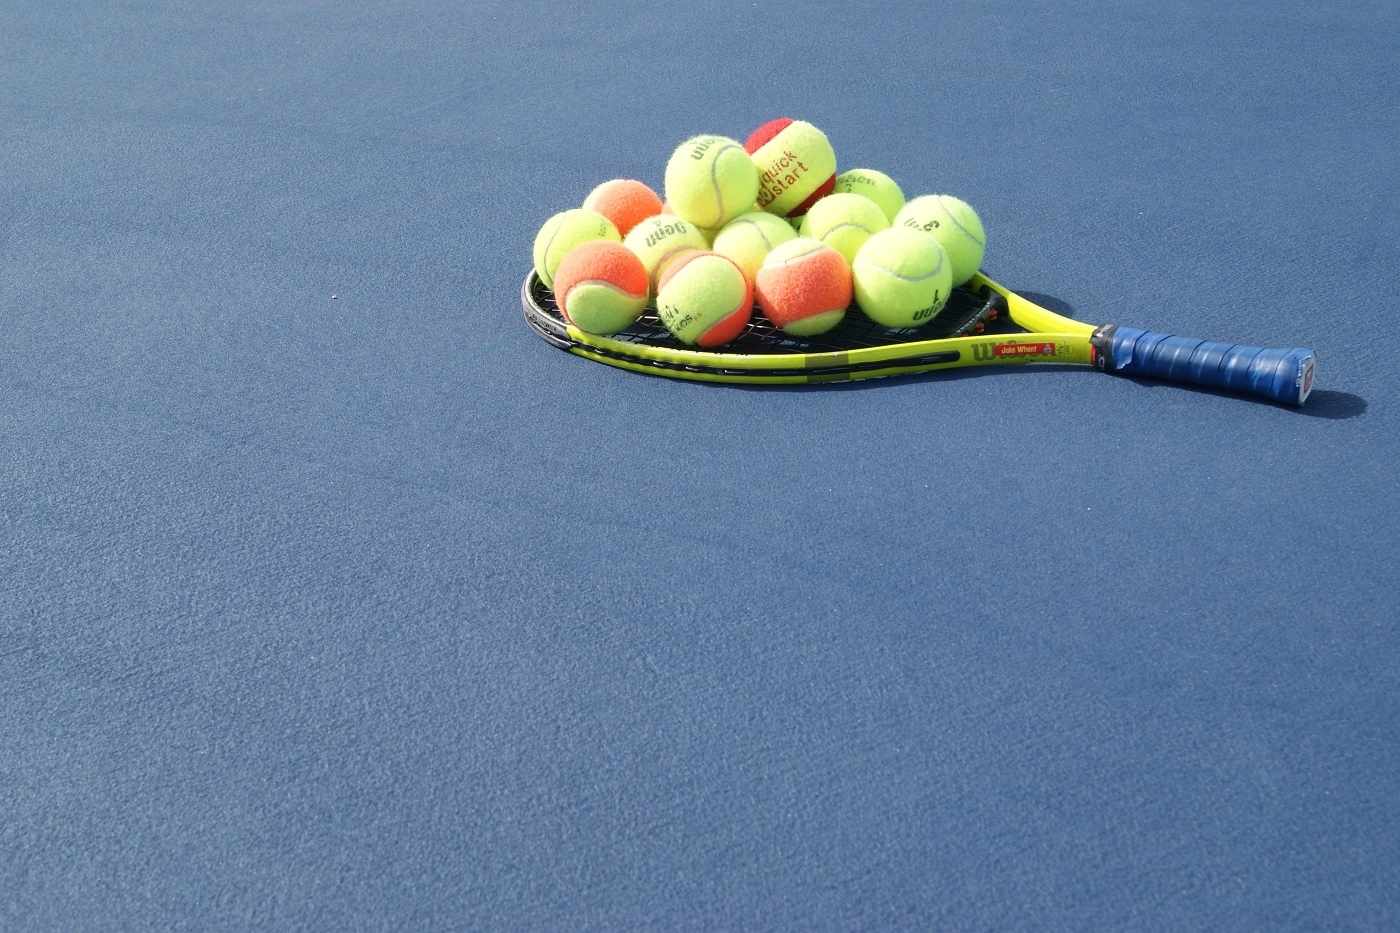 racquet and balls